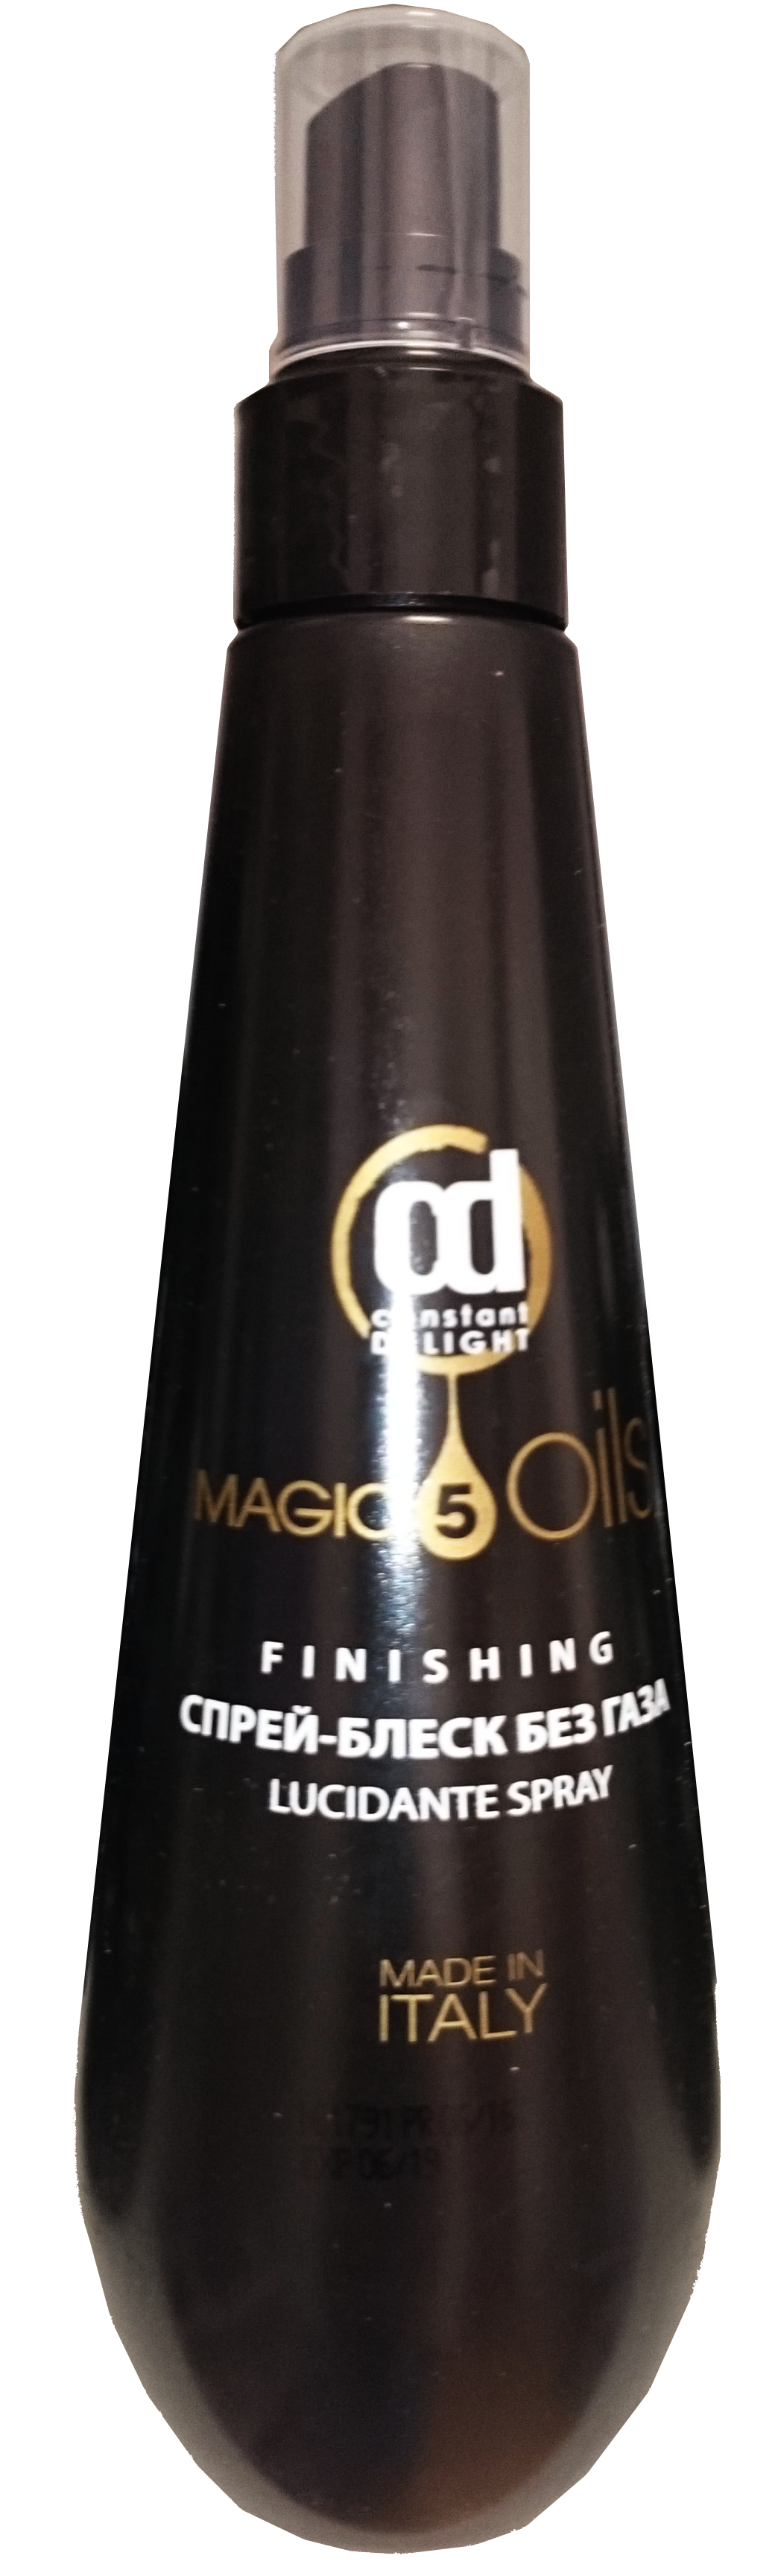 Спрей-блеск без газа 5 Масел «5 MAGIC OILS» FINISHING, 250мл. от магазина HairKiss